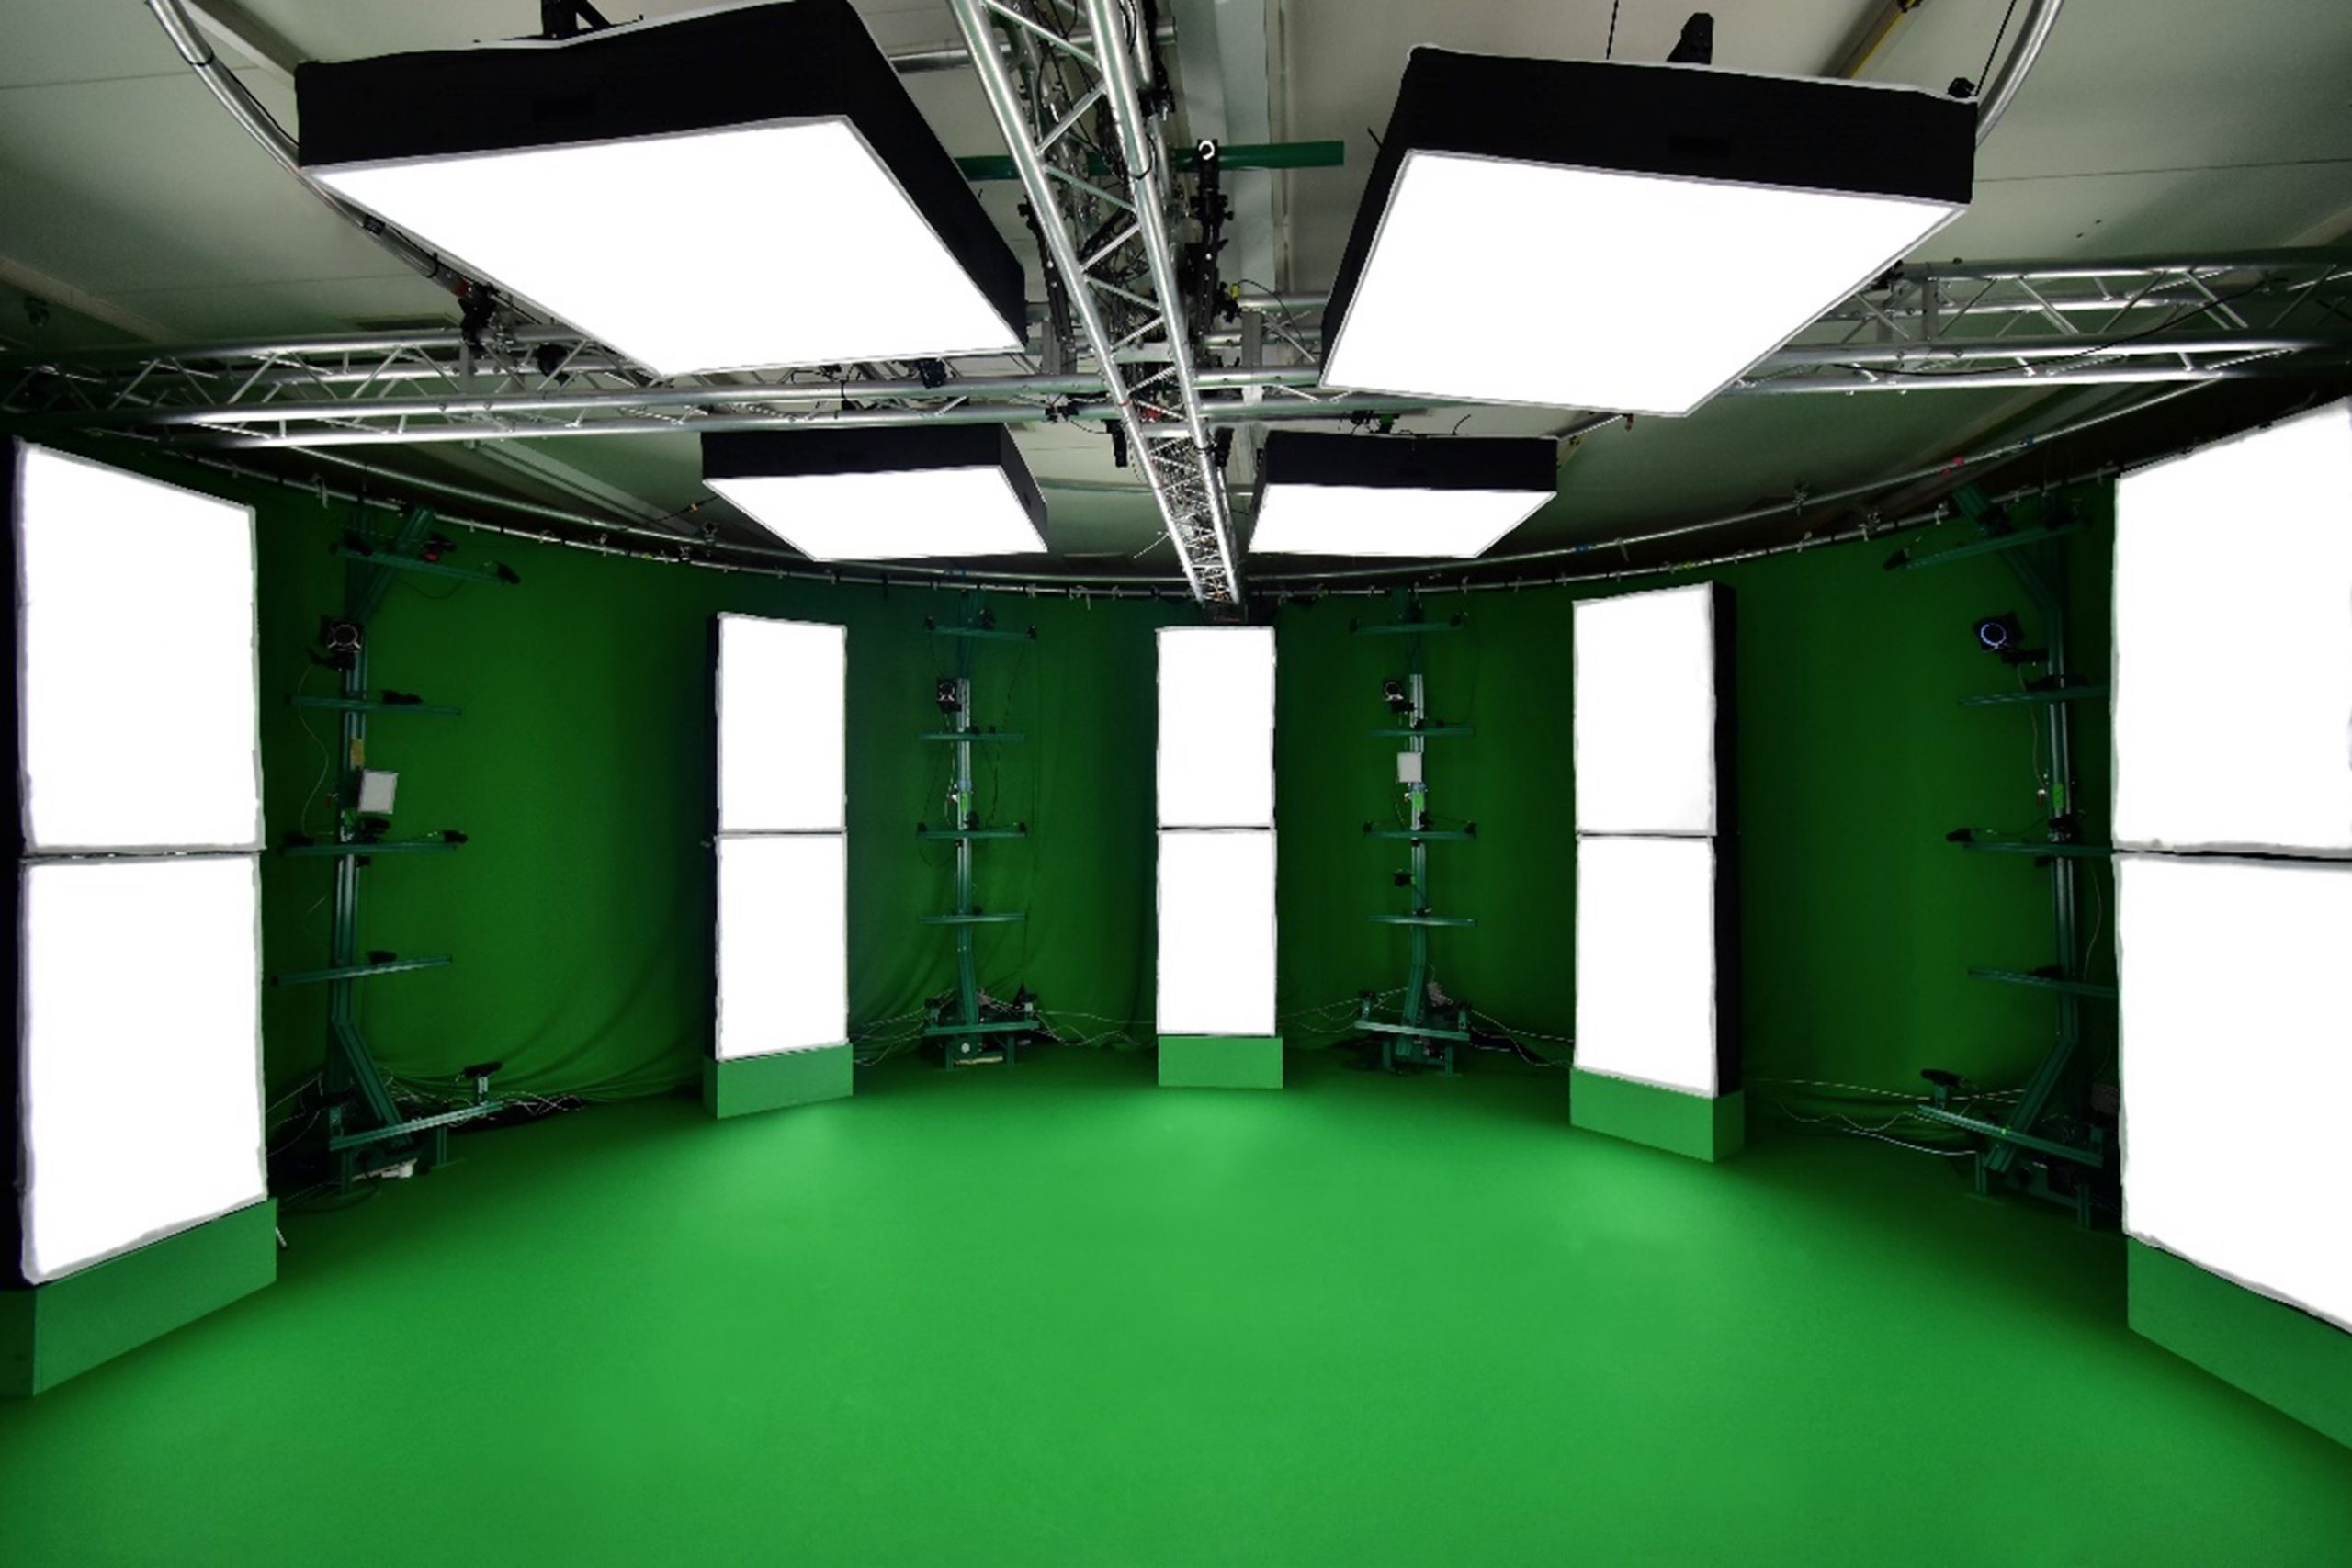 ニコン相模原製作所内の仮施設にある、ボリュメトリック映像撮影システム